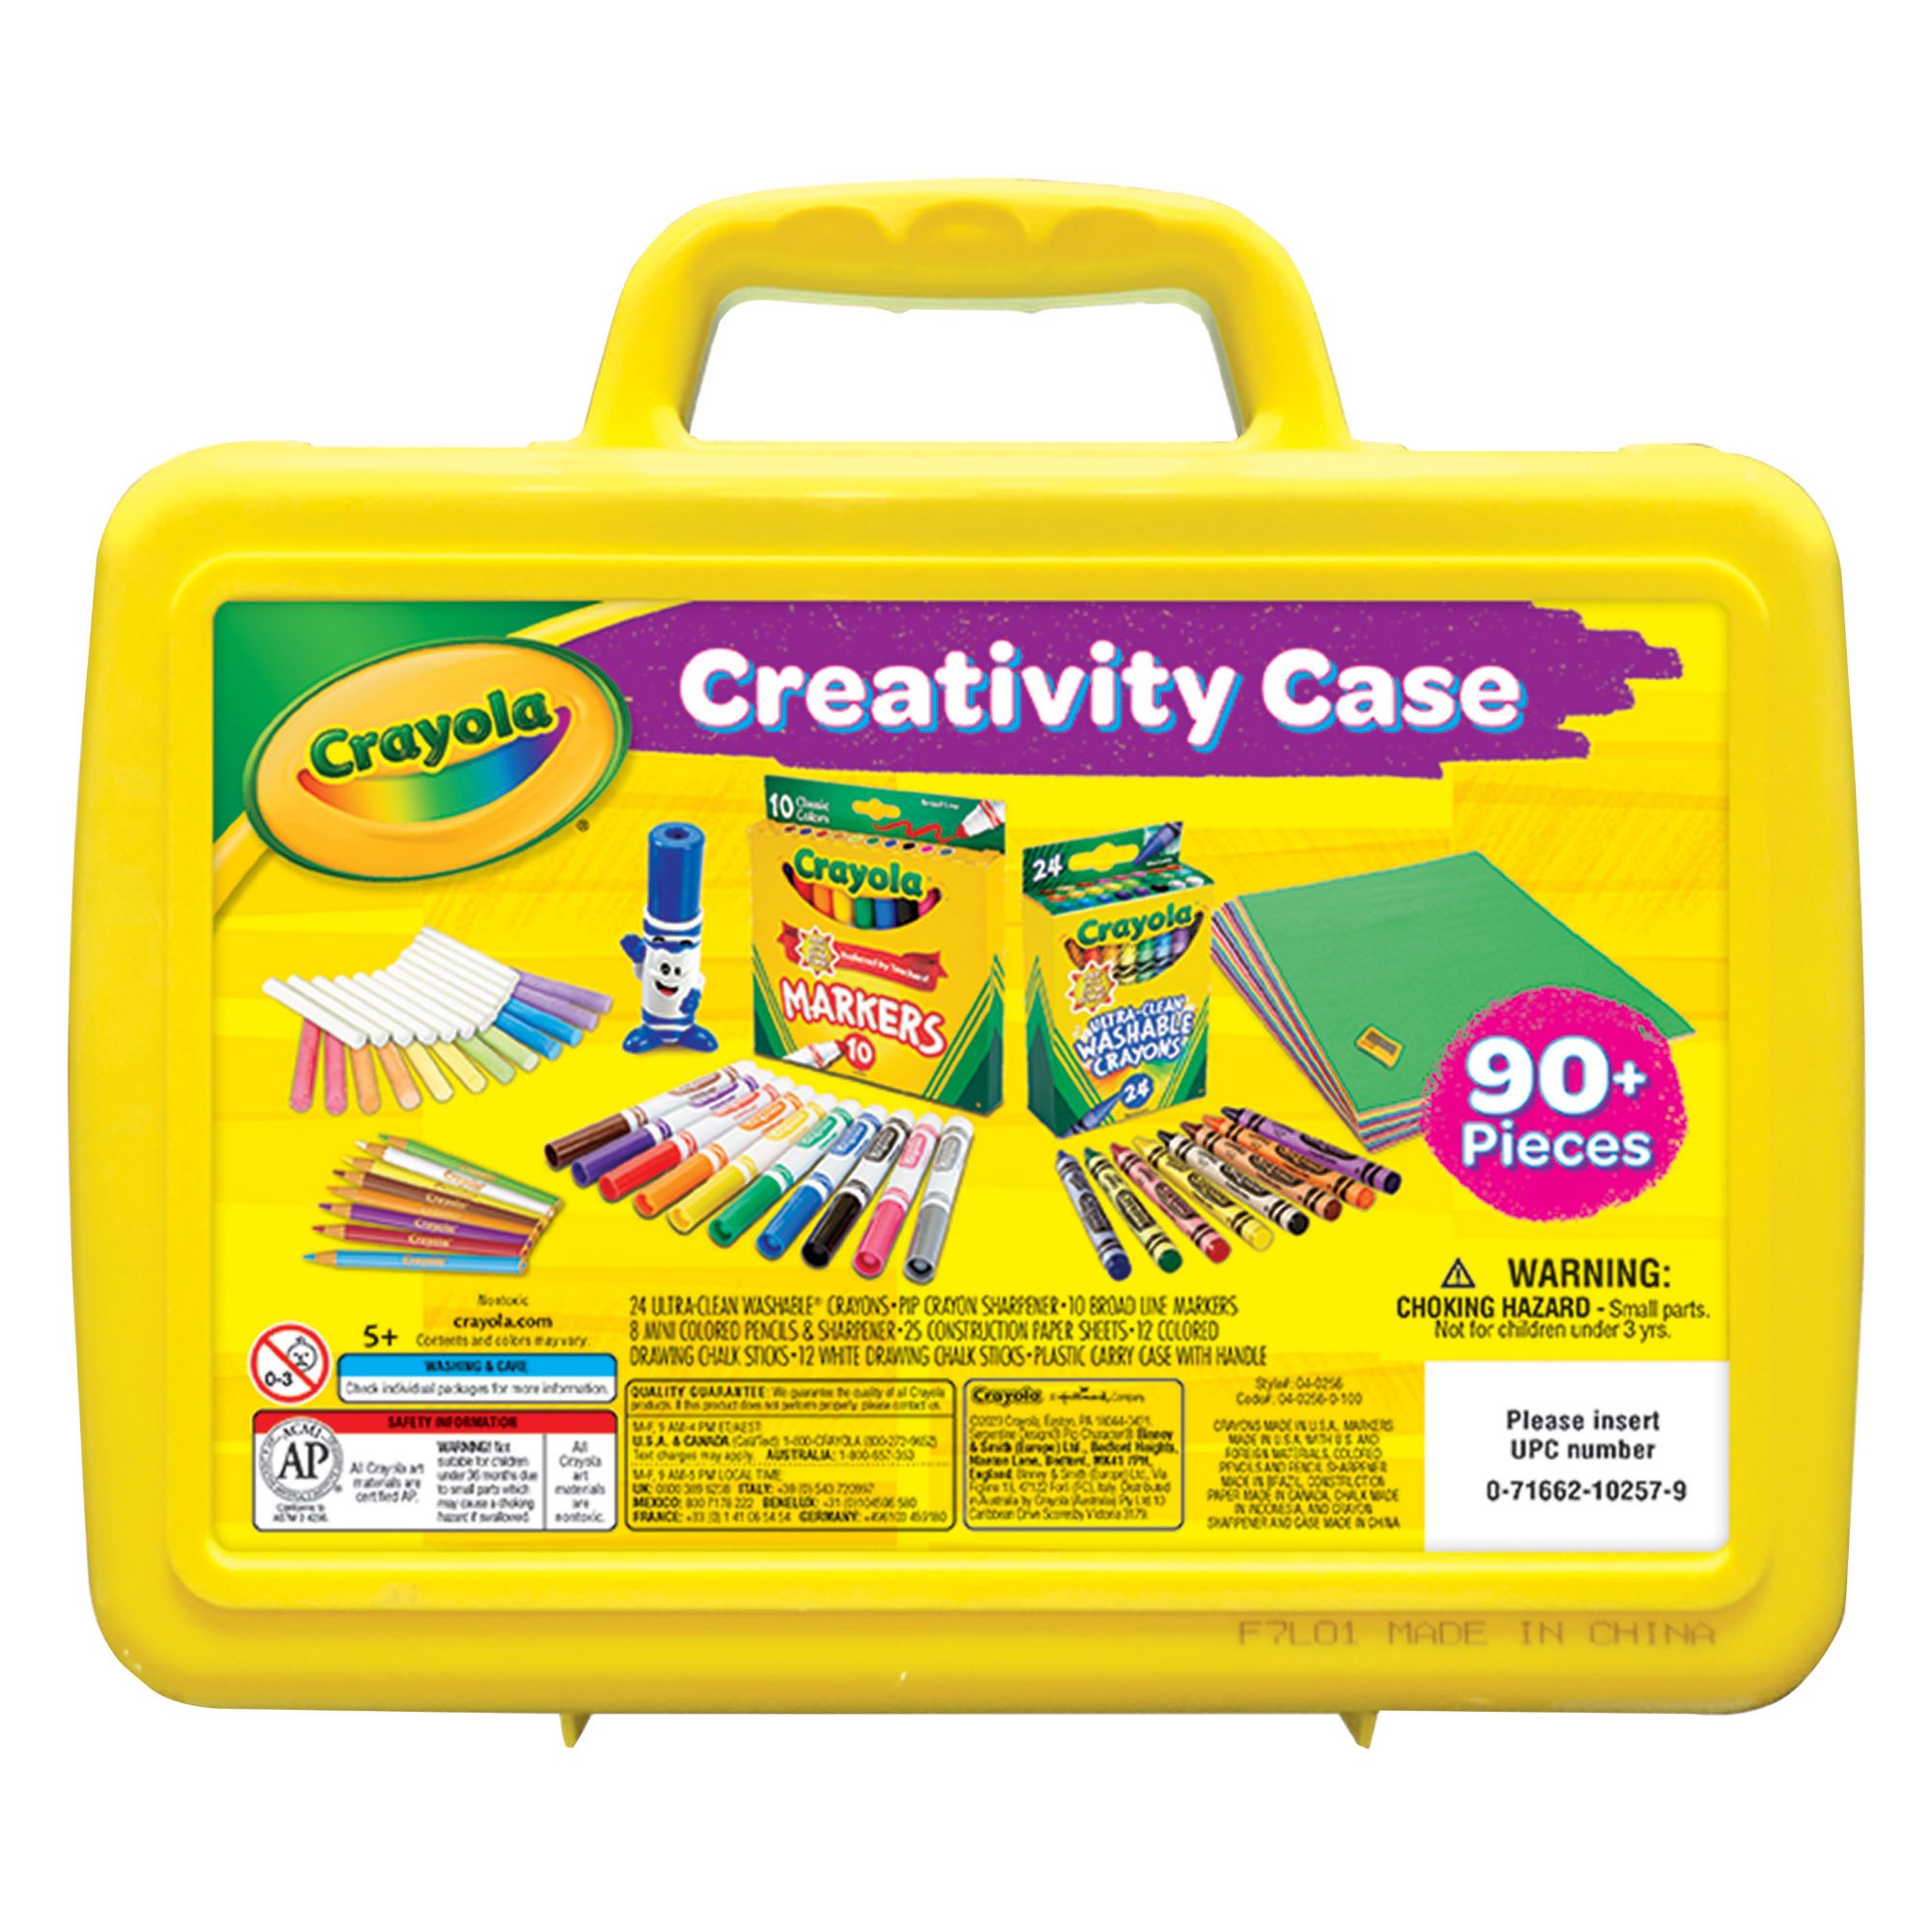 Restock your craft supplies, 90-piece Crayola kit for under $15